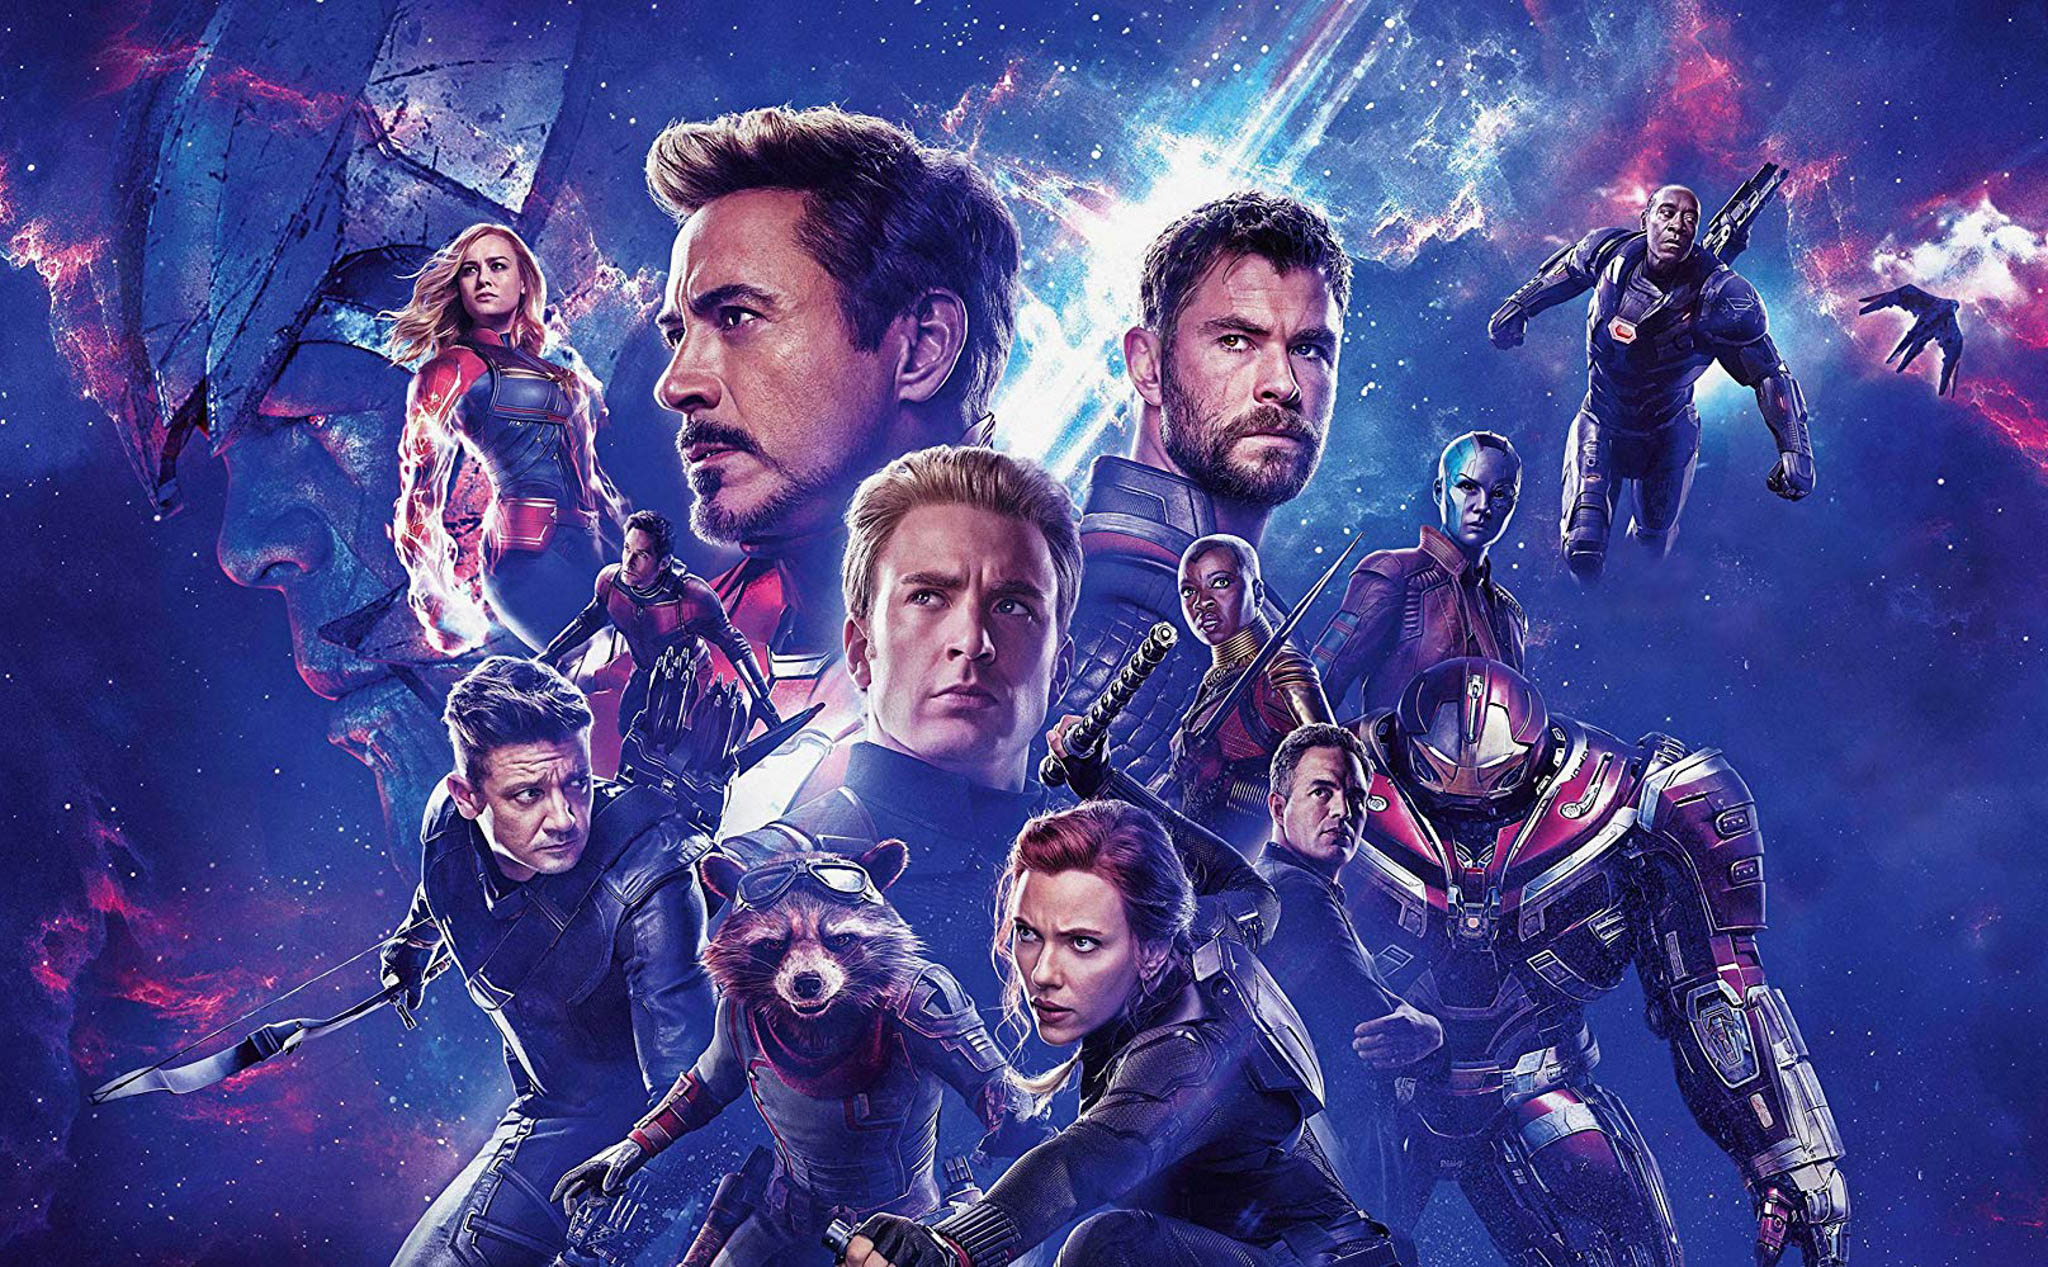 Avengers: Hồi Kết - bộ phim nhận được sự chờ đợi của hàng triệu khán giả trên toàn thế giới. Hãy xem những hình ảnh đẹp mắt và chuẩn bị cho một cuộc phiêu lưu hành động đầy kịch tính.